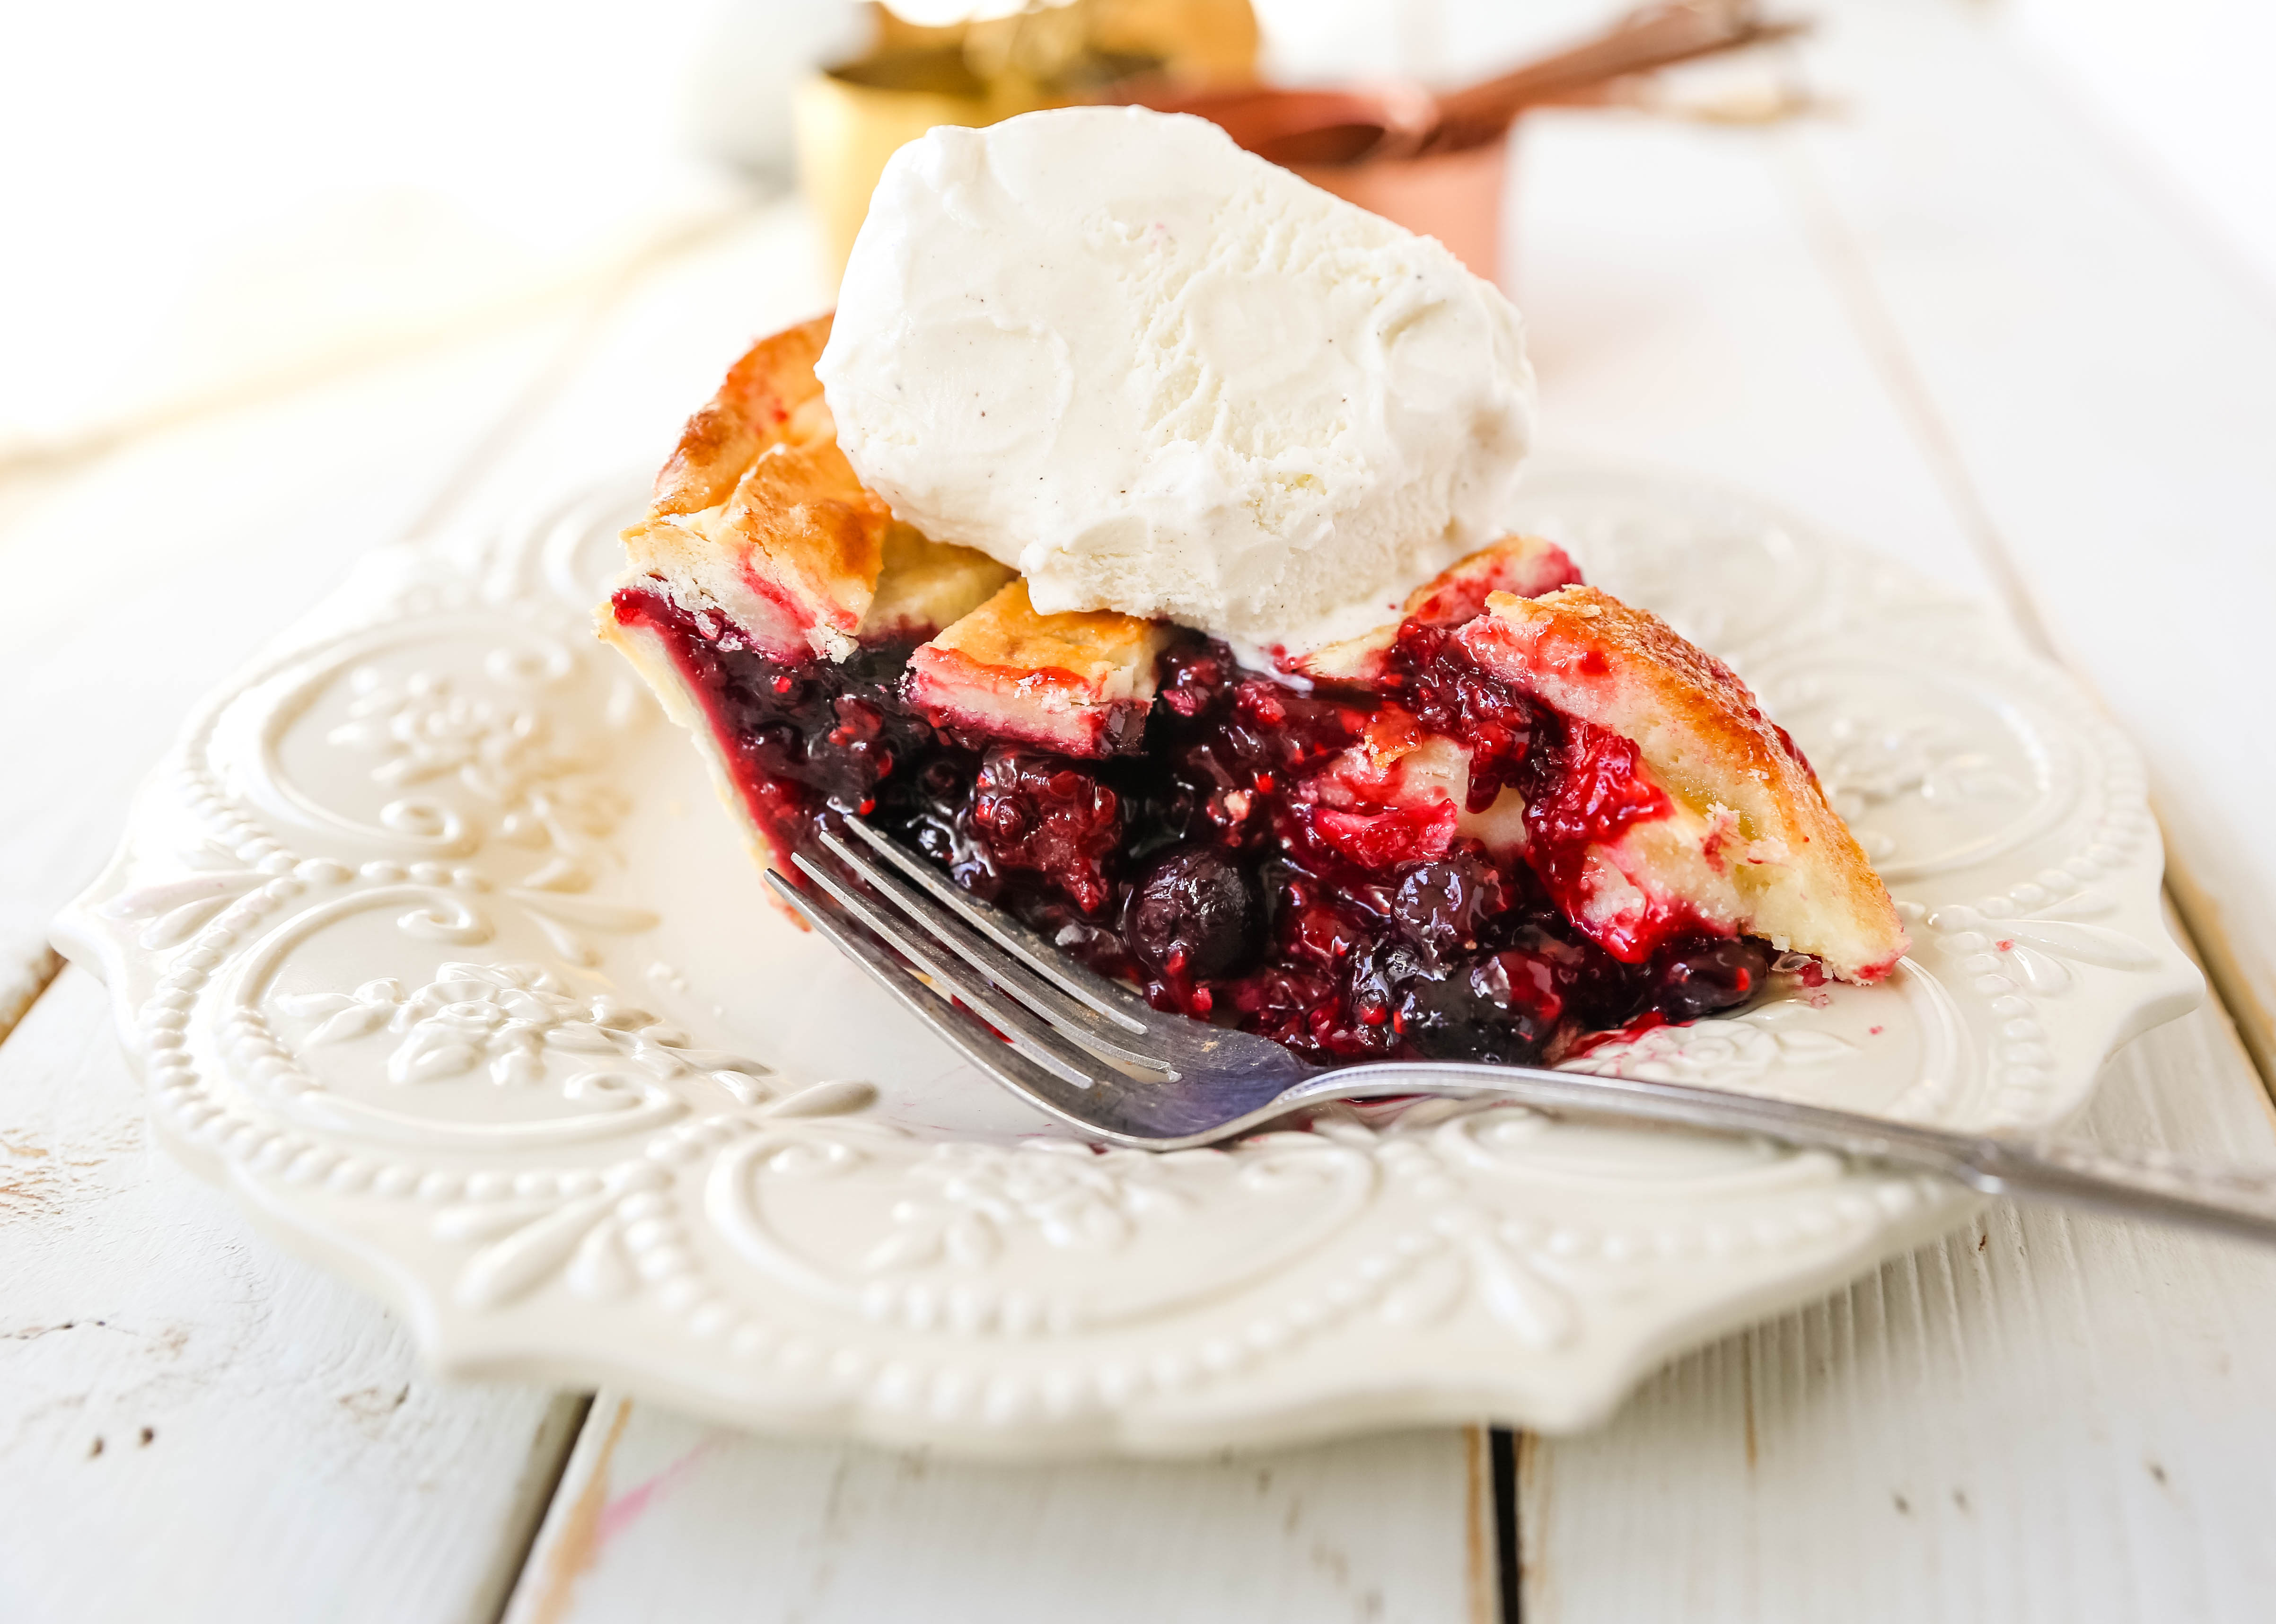 トリプルベリーパイ。 バター風味のパイ生地を使った最高の自家製ベリーパイのレシピです。 バニラビーンズのアイスクリームをのせれば、完璧なベリーデザートの完成です。 The best berry pie recipe. www.modernhoney.com #berrypie #pie #berries #tripleberrypie #thanksgiving